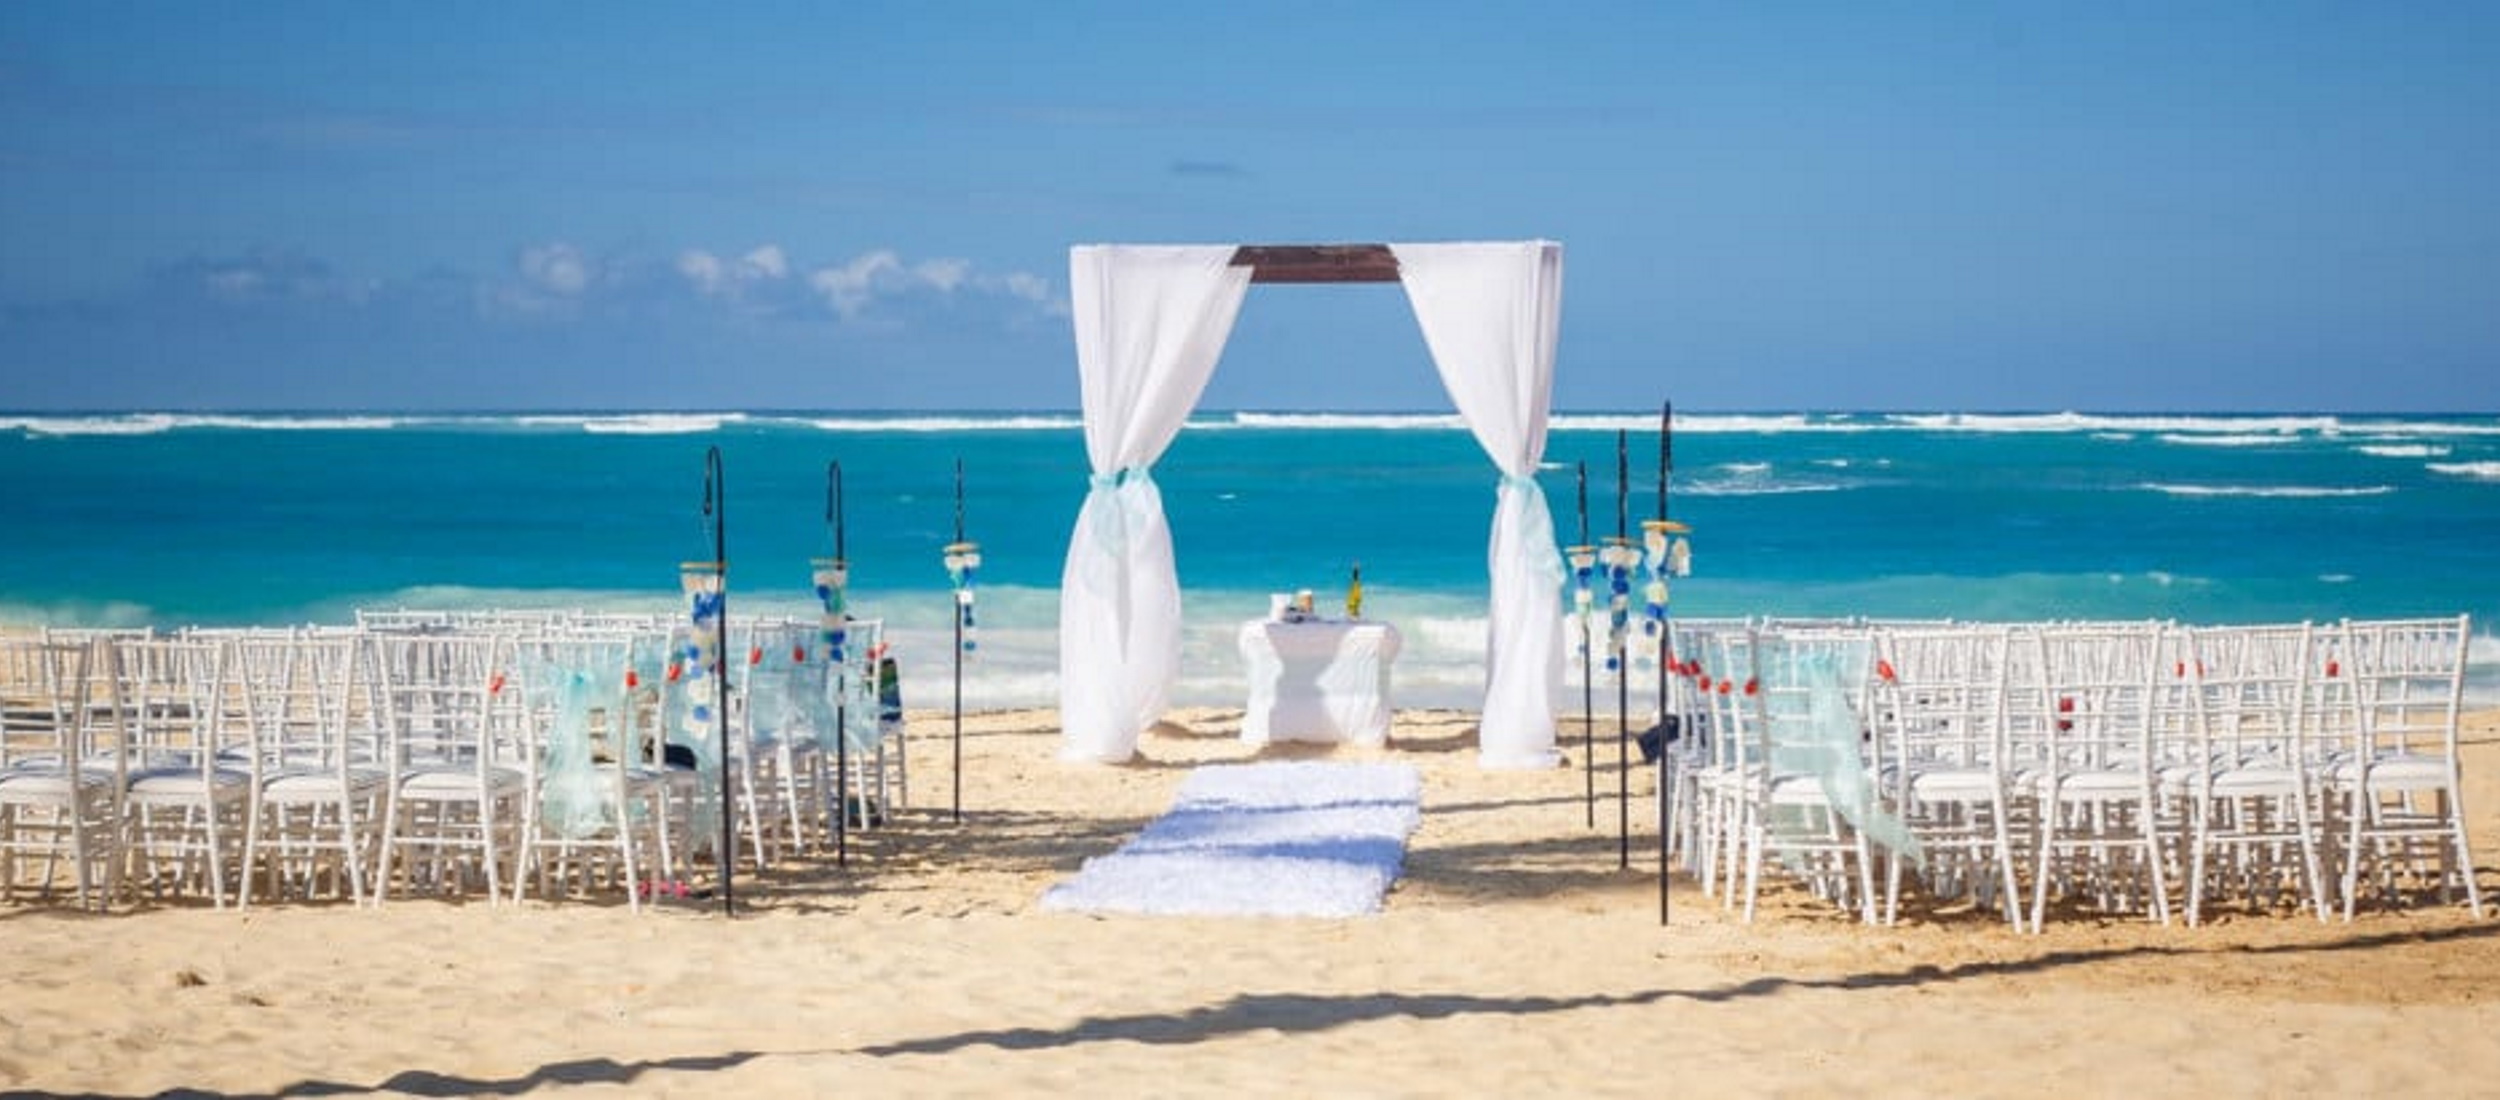 beach wedding gazebo